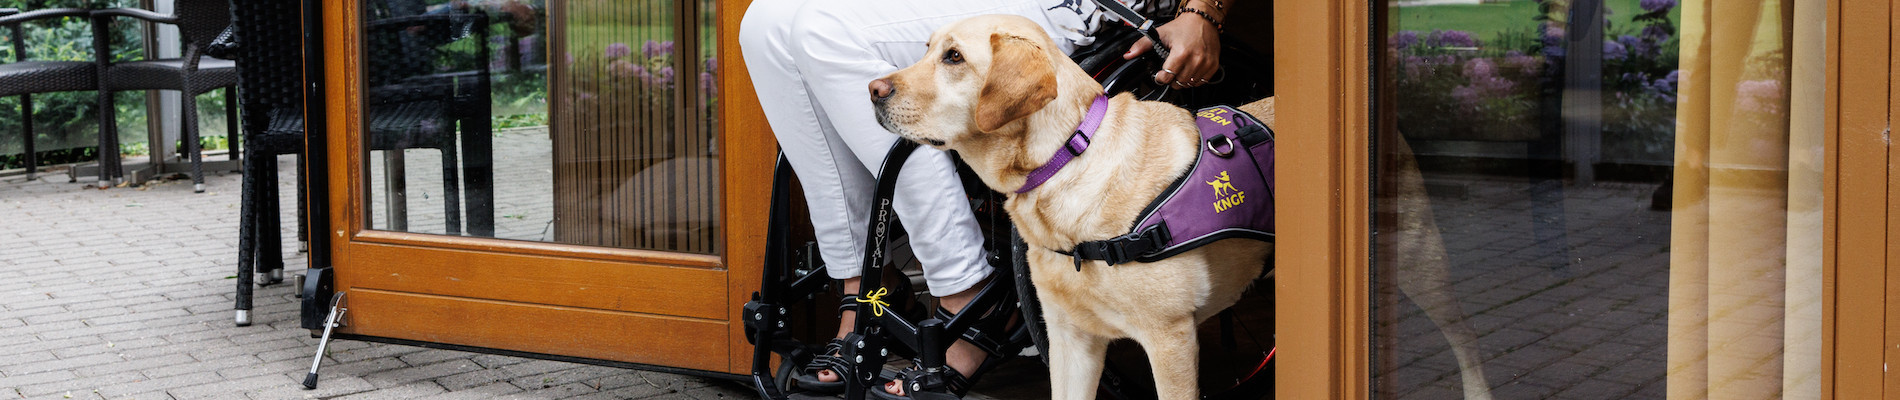 Mayke in een rolstoel samen met haar hulphond Roos in een deuropening